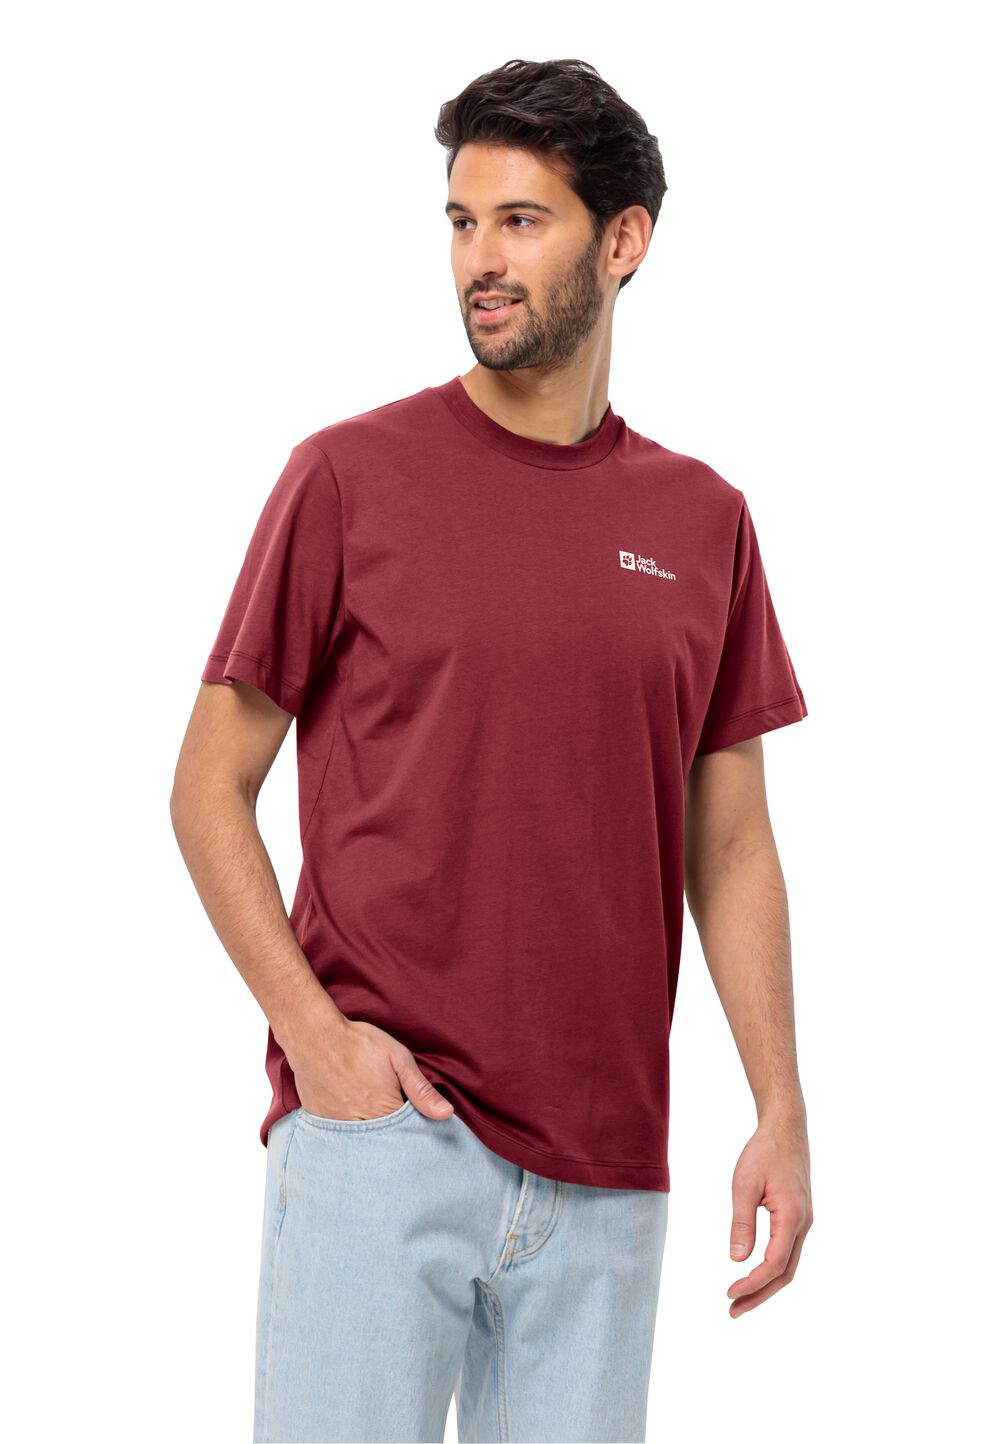 Jack Wolfskin Essential T-Shirt Men Heren T-shirt van biologisch katoen 3XL purper deep ruby